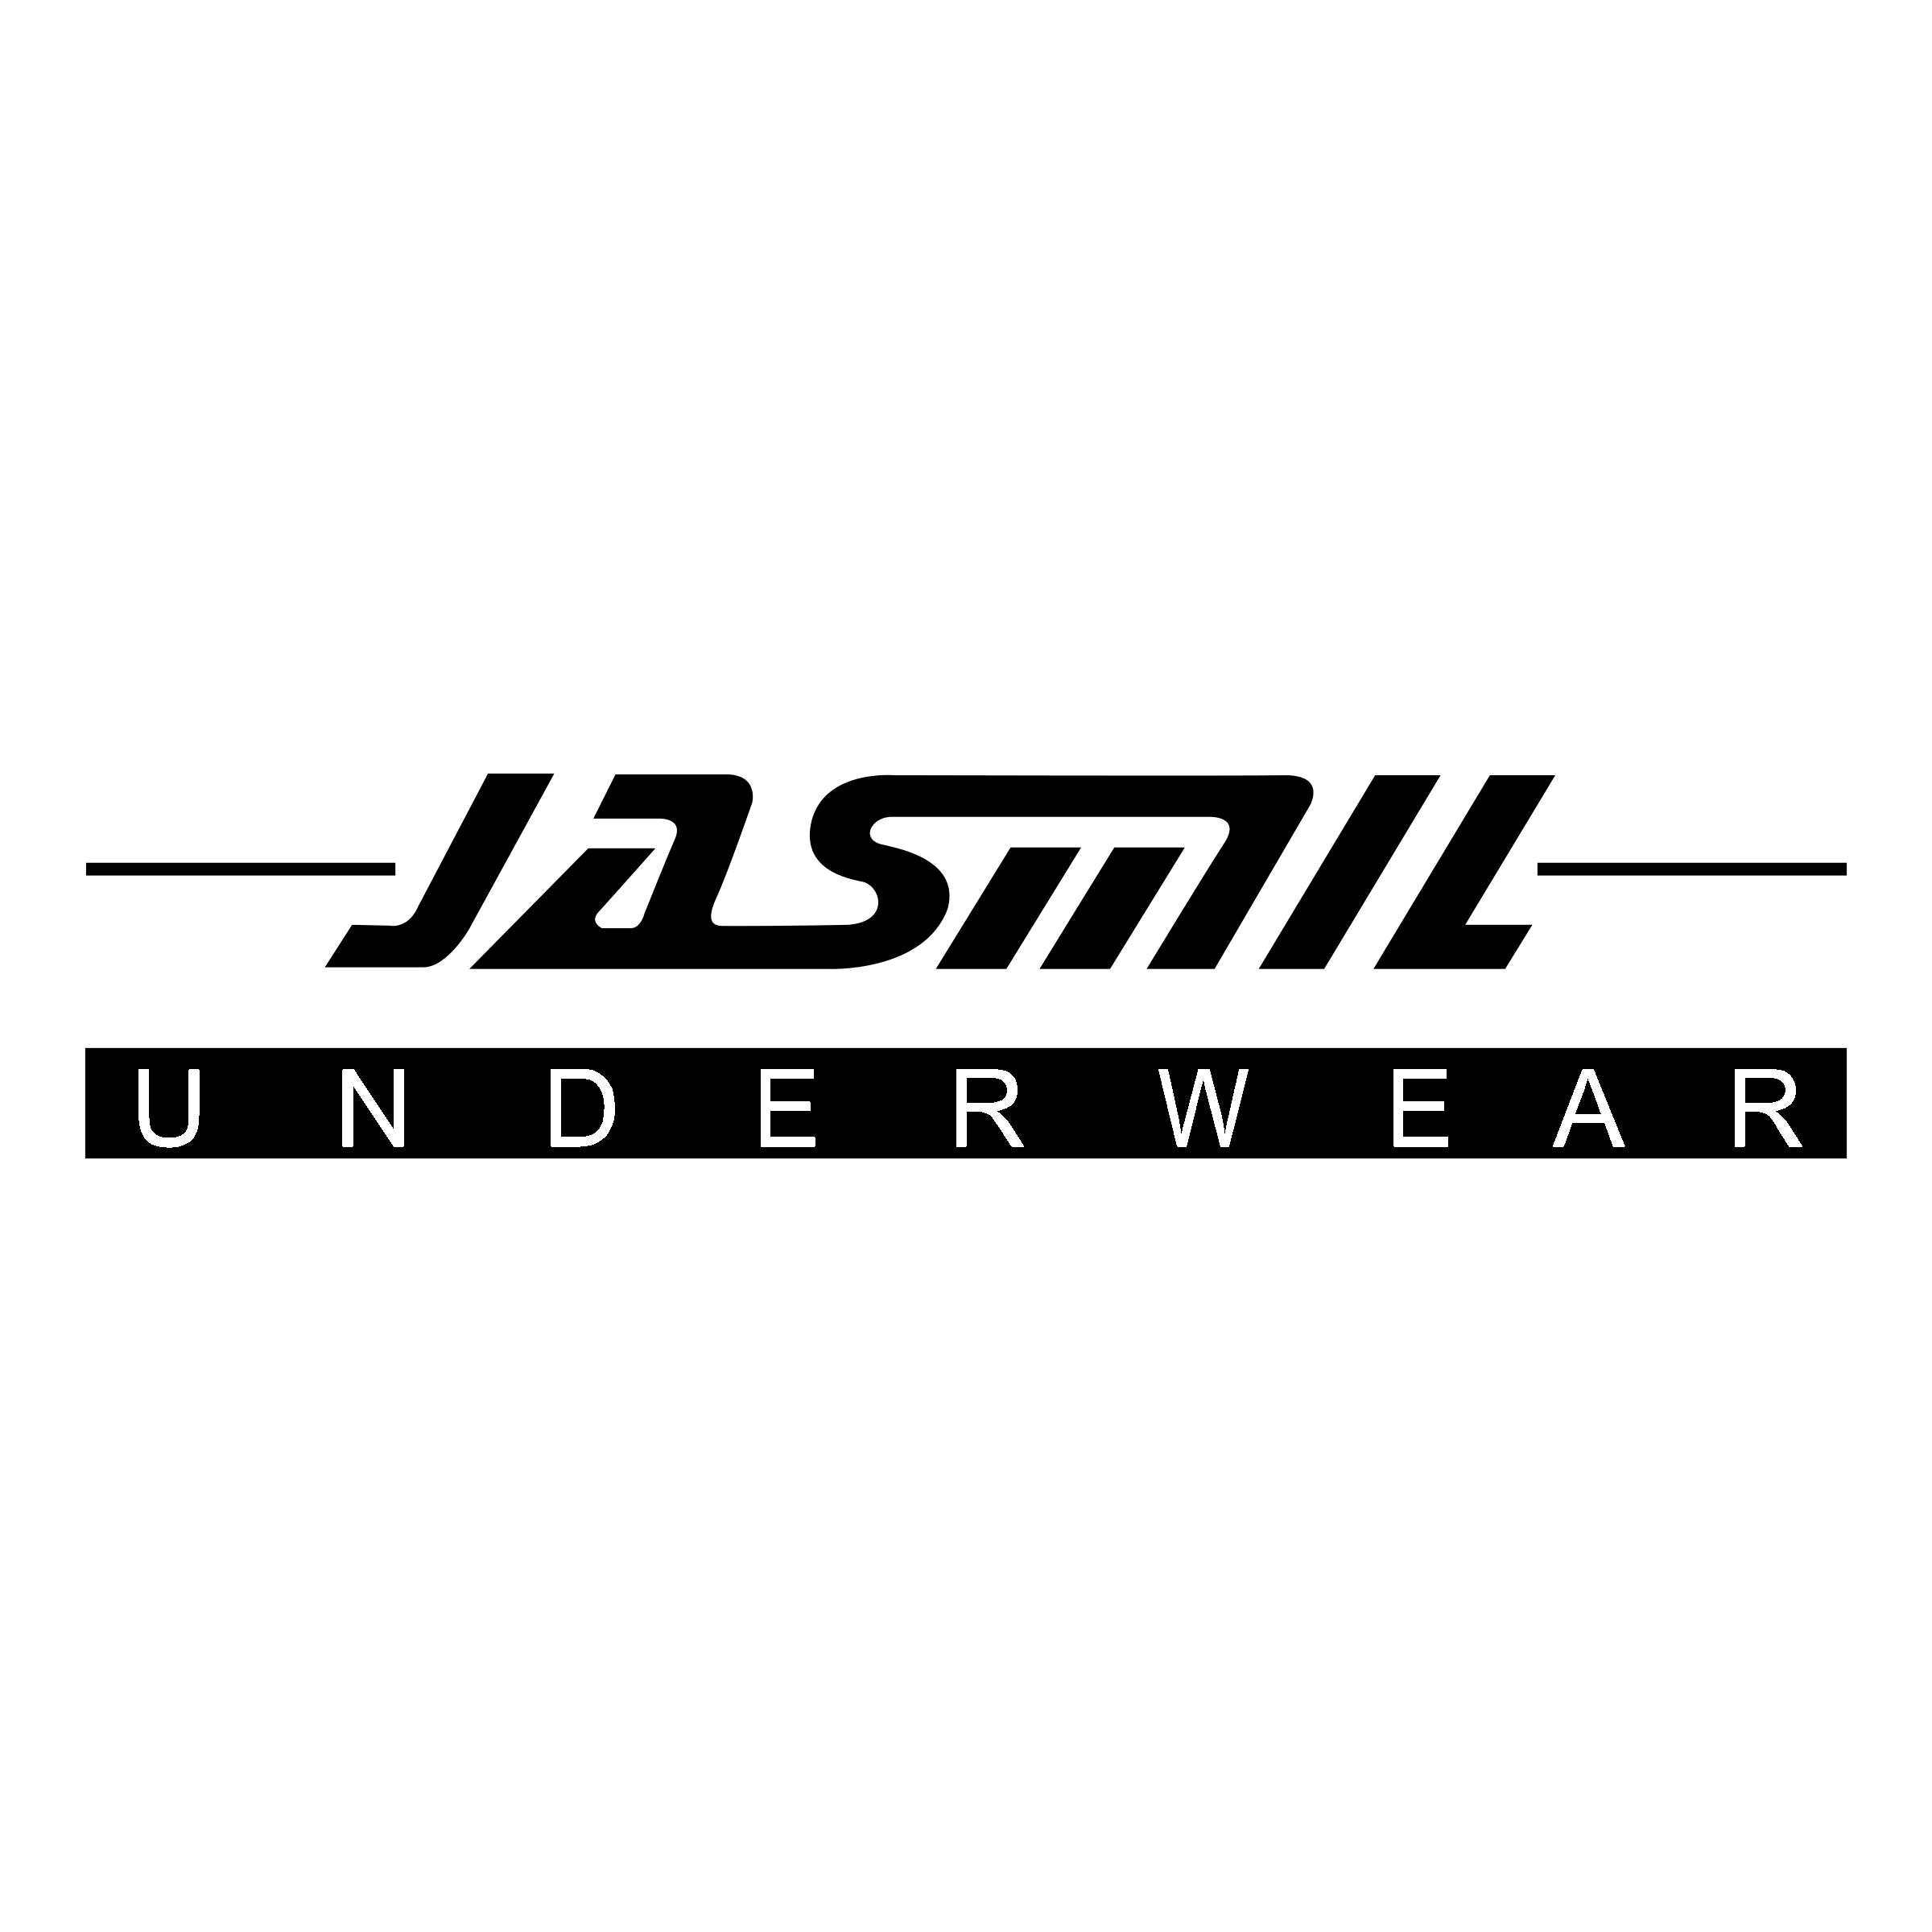 Underwear Logo - Jasmil underwear Logo PNG Transparent & SVG Vector